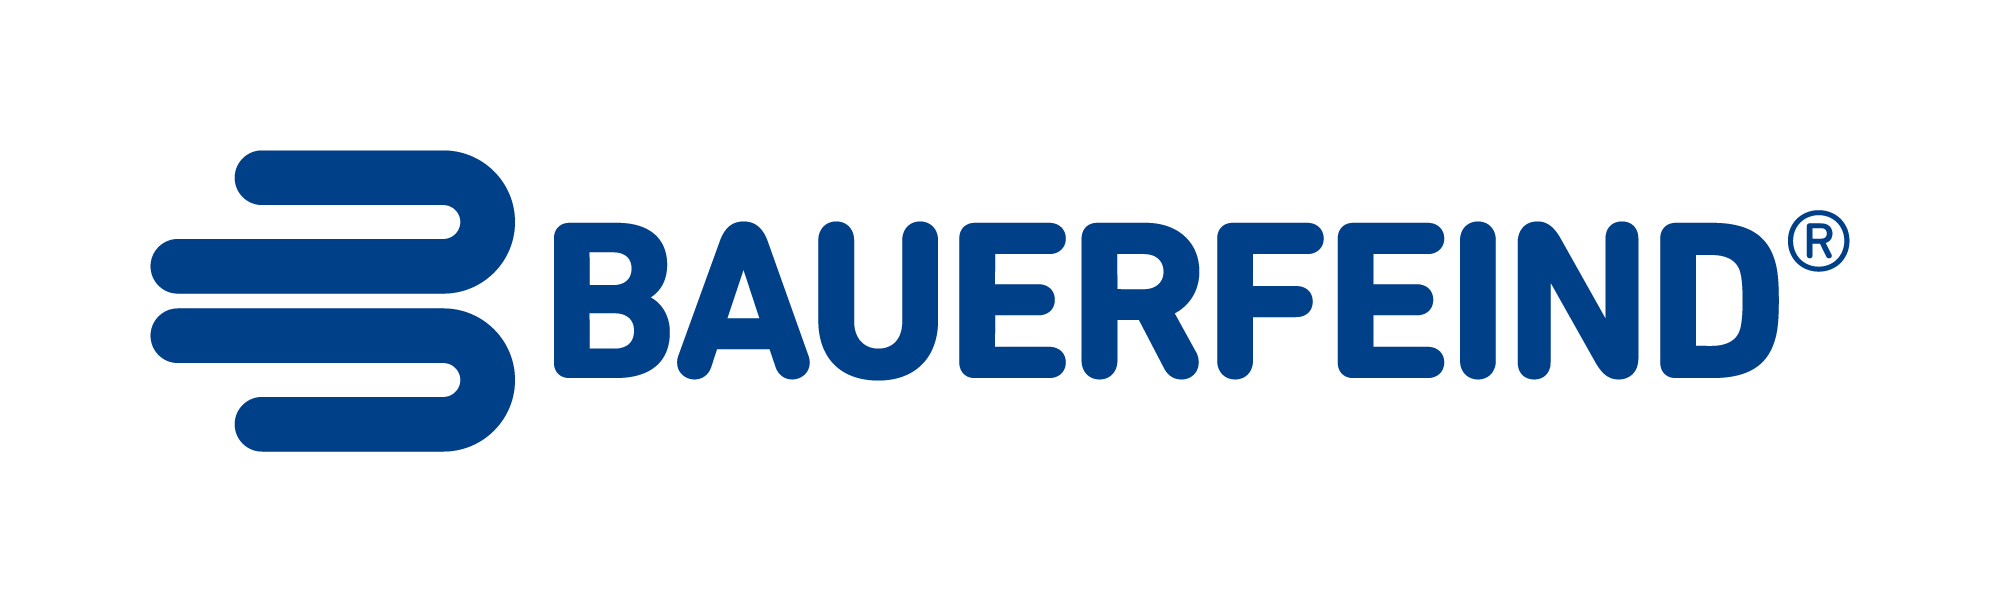 Bauerfeind Australia Help Centre  logo